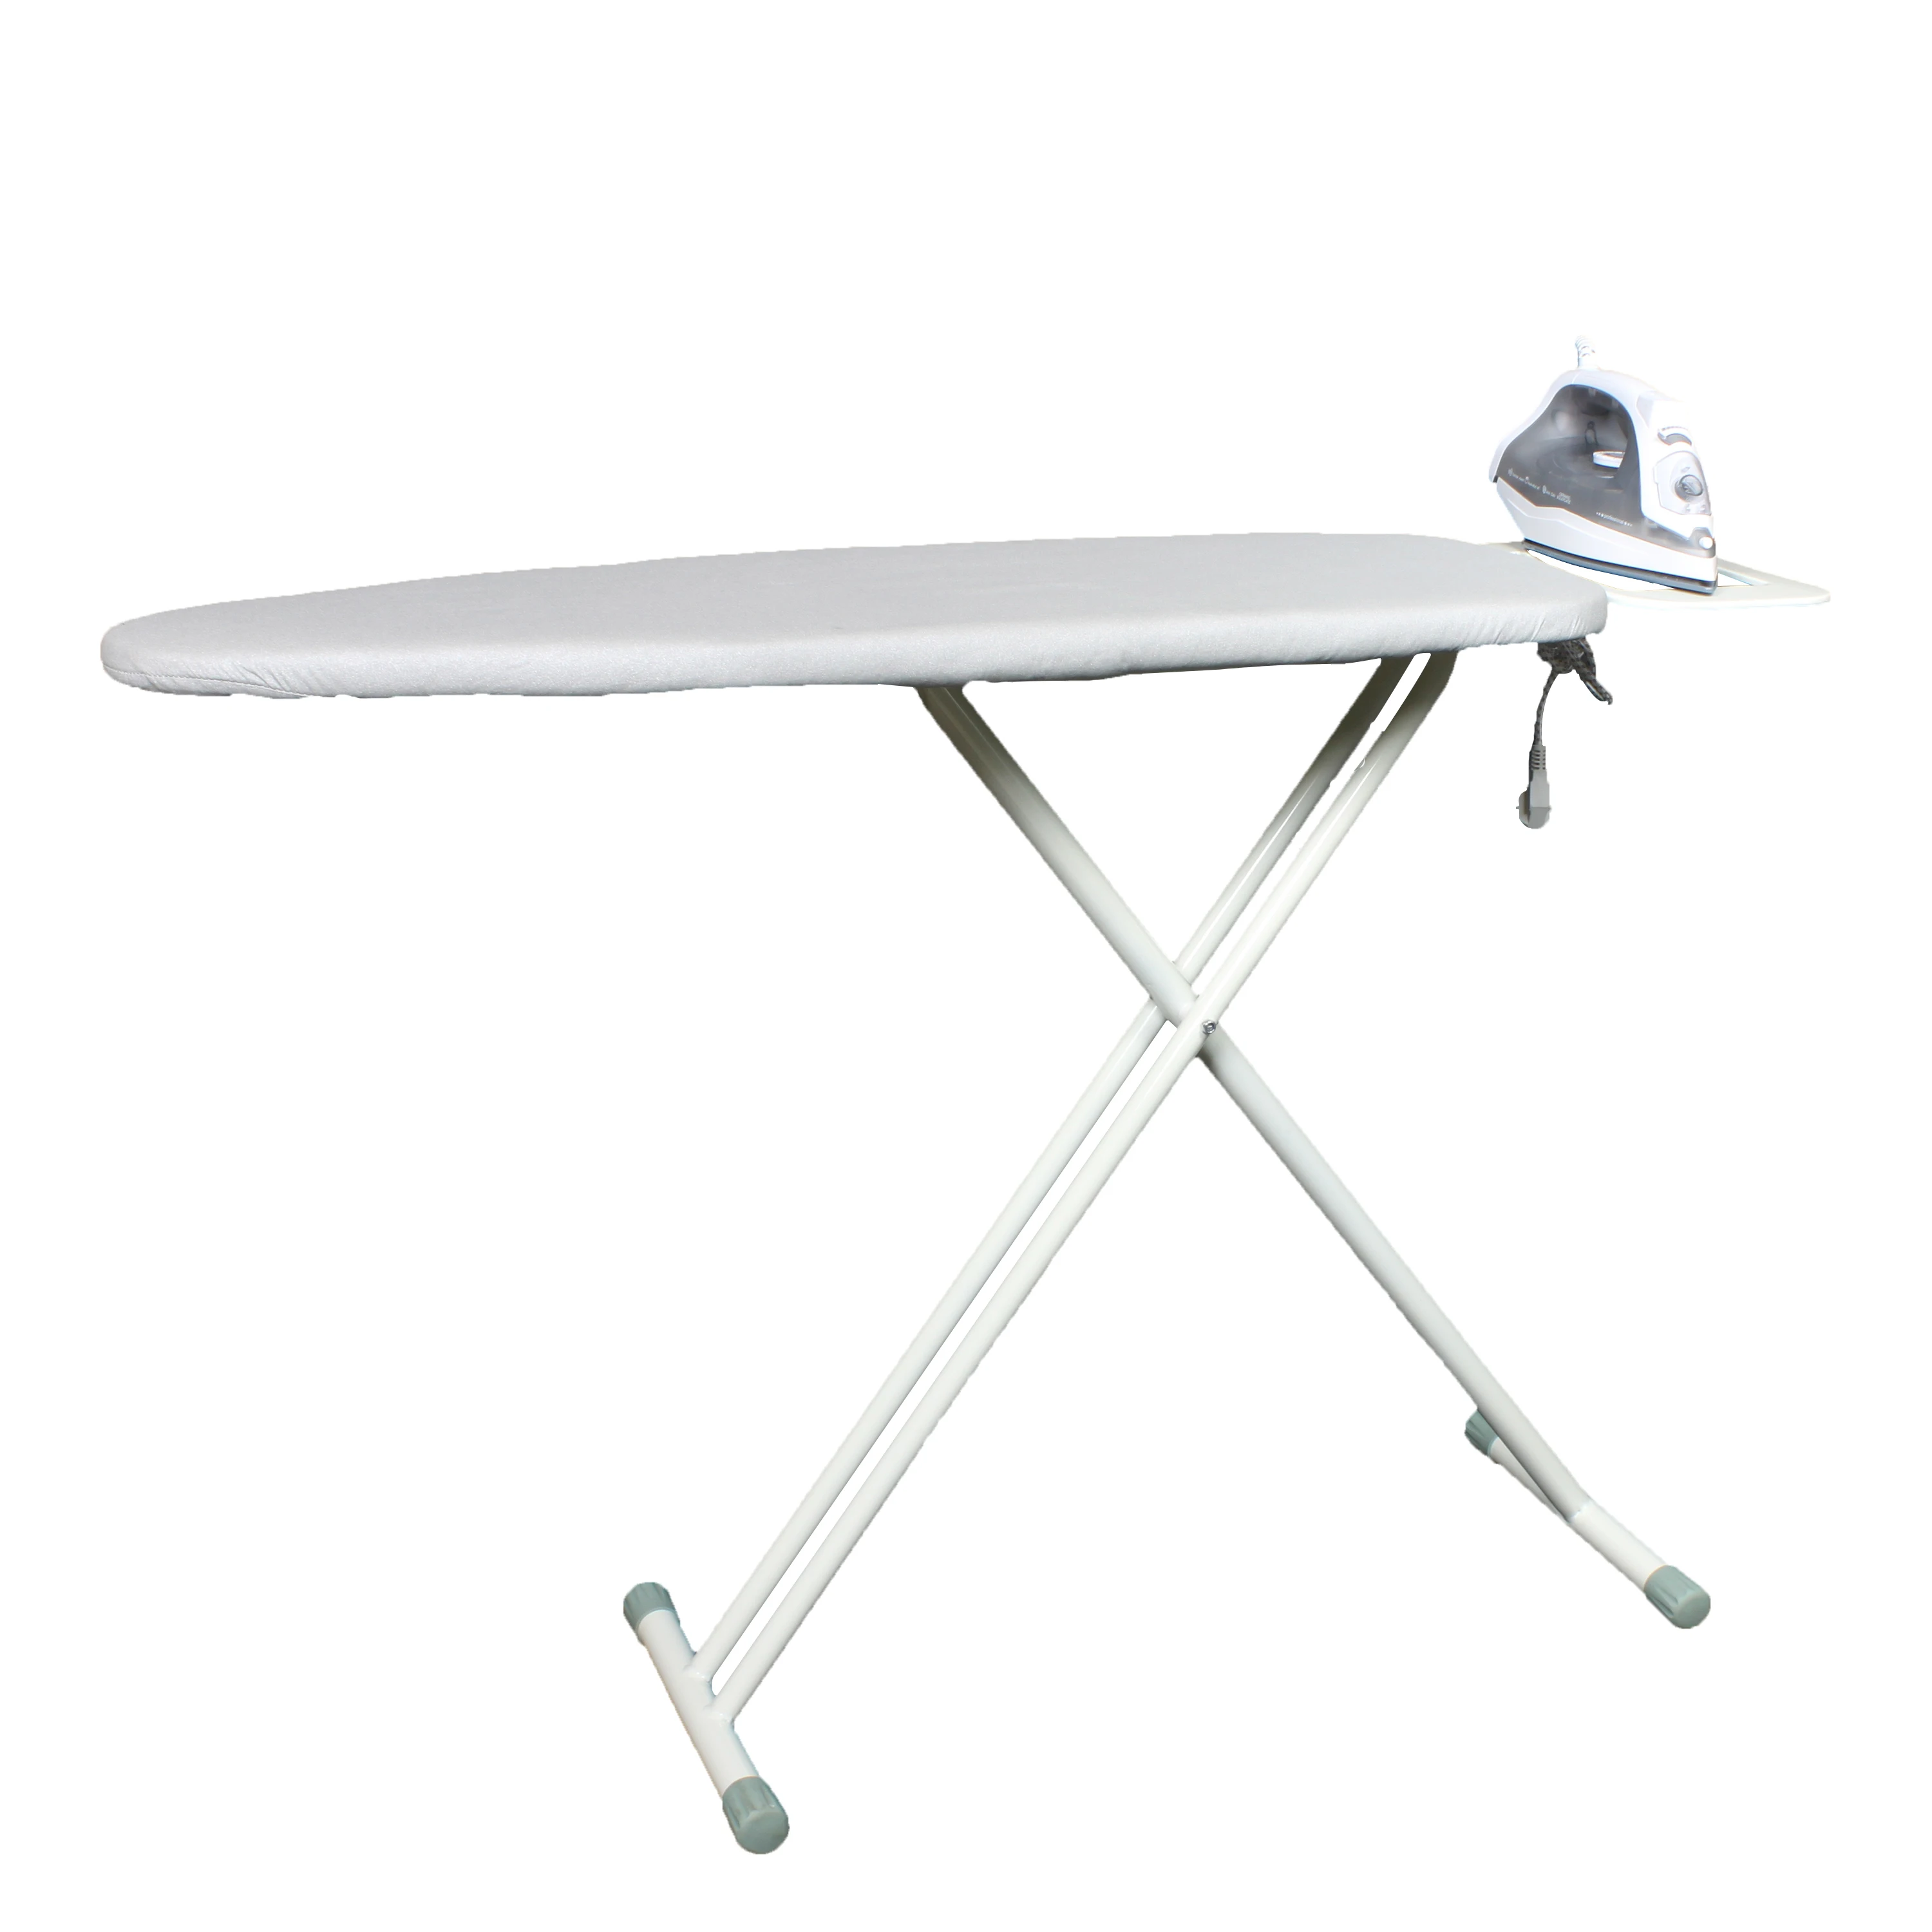 
Ironing certer, ironing, automatic clothe ironing machine (USIB S01)  (62192145712)